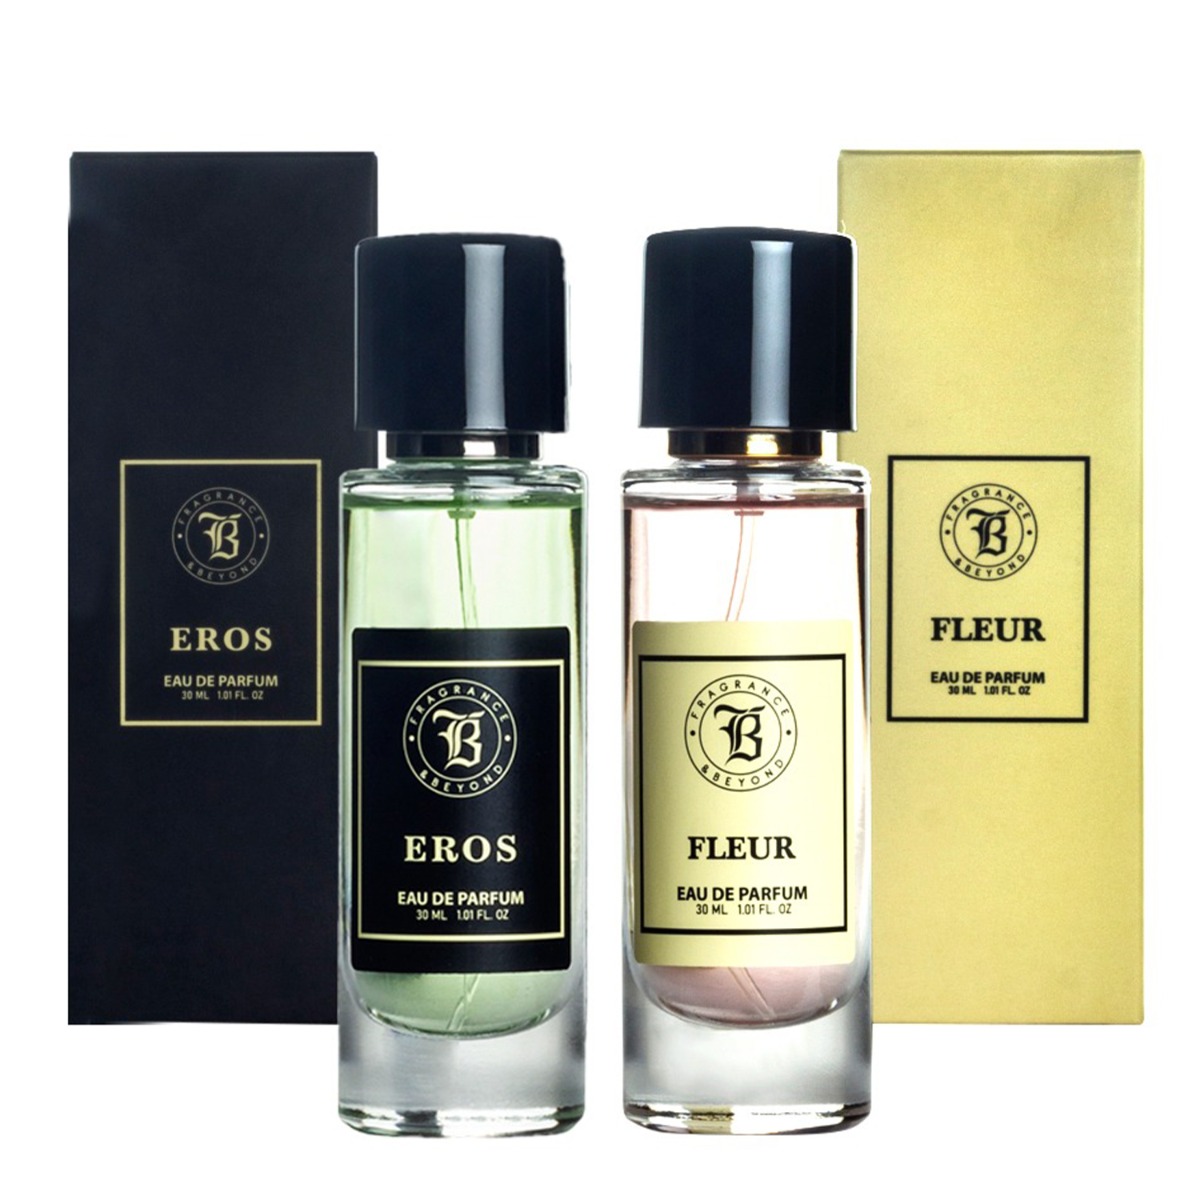 Fragrance & Beyond Eros and Fleur Eau De Parfum (Perfume) Combo For men and women, 30ml Each